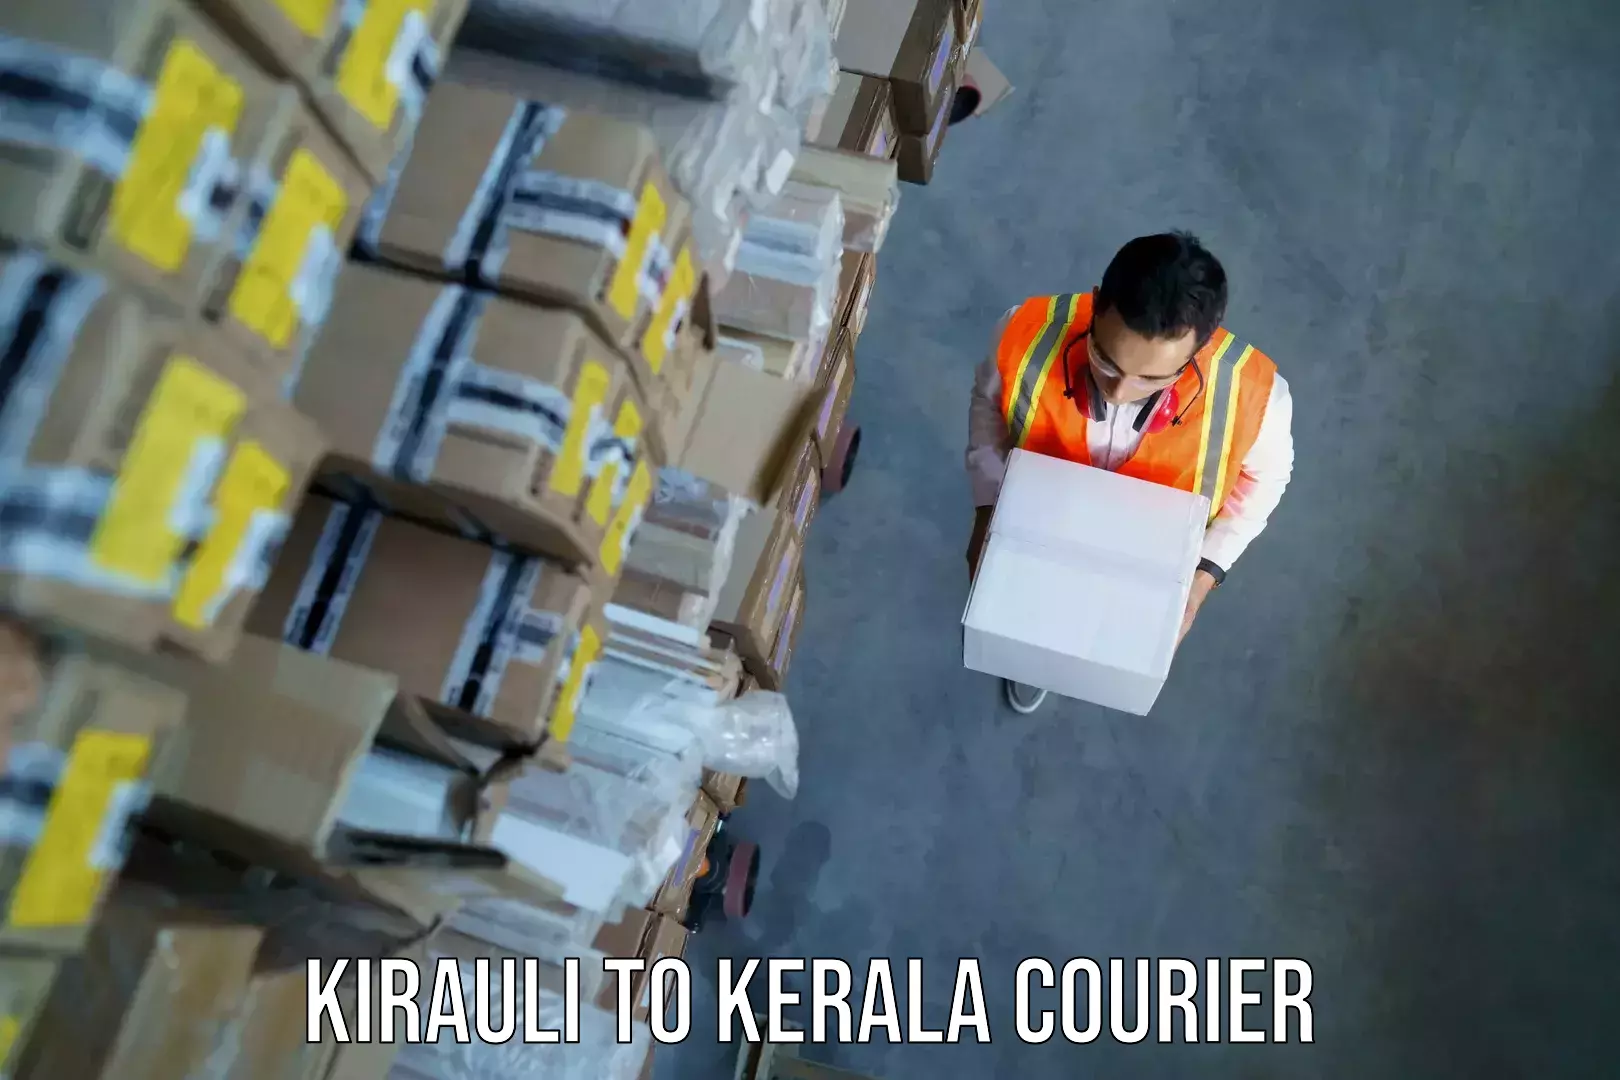 Luggage transport operations Kirauli to Kerala